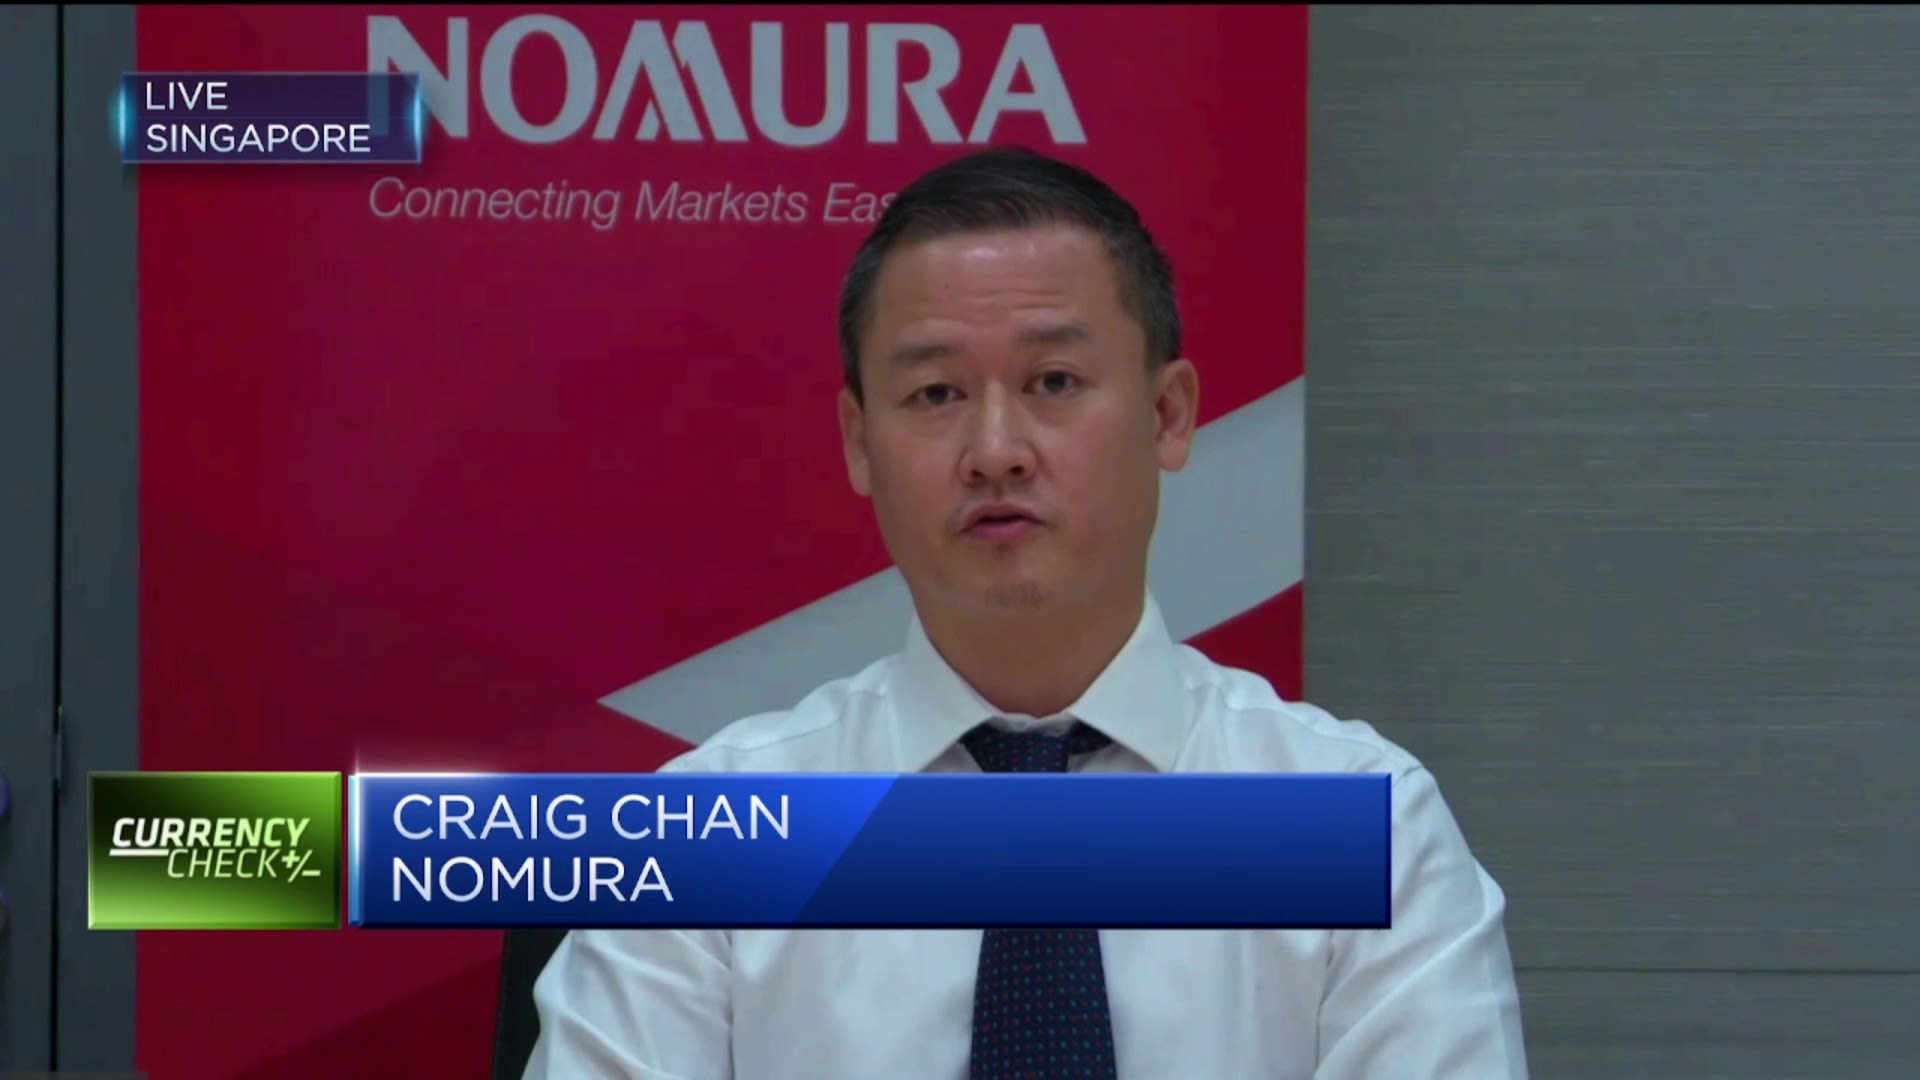 Expect the euro/dollar to break parity soon, says Nomura